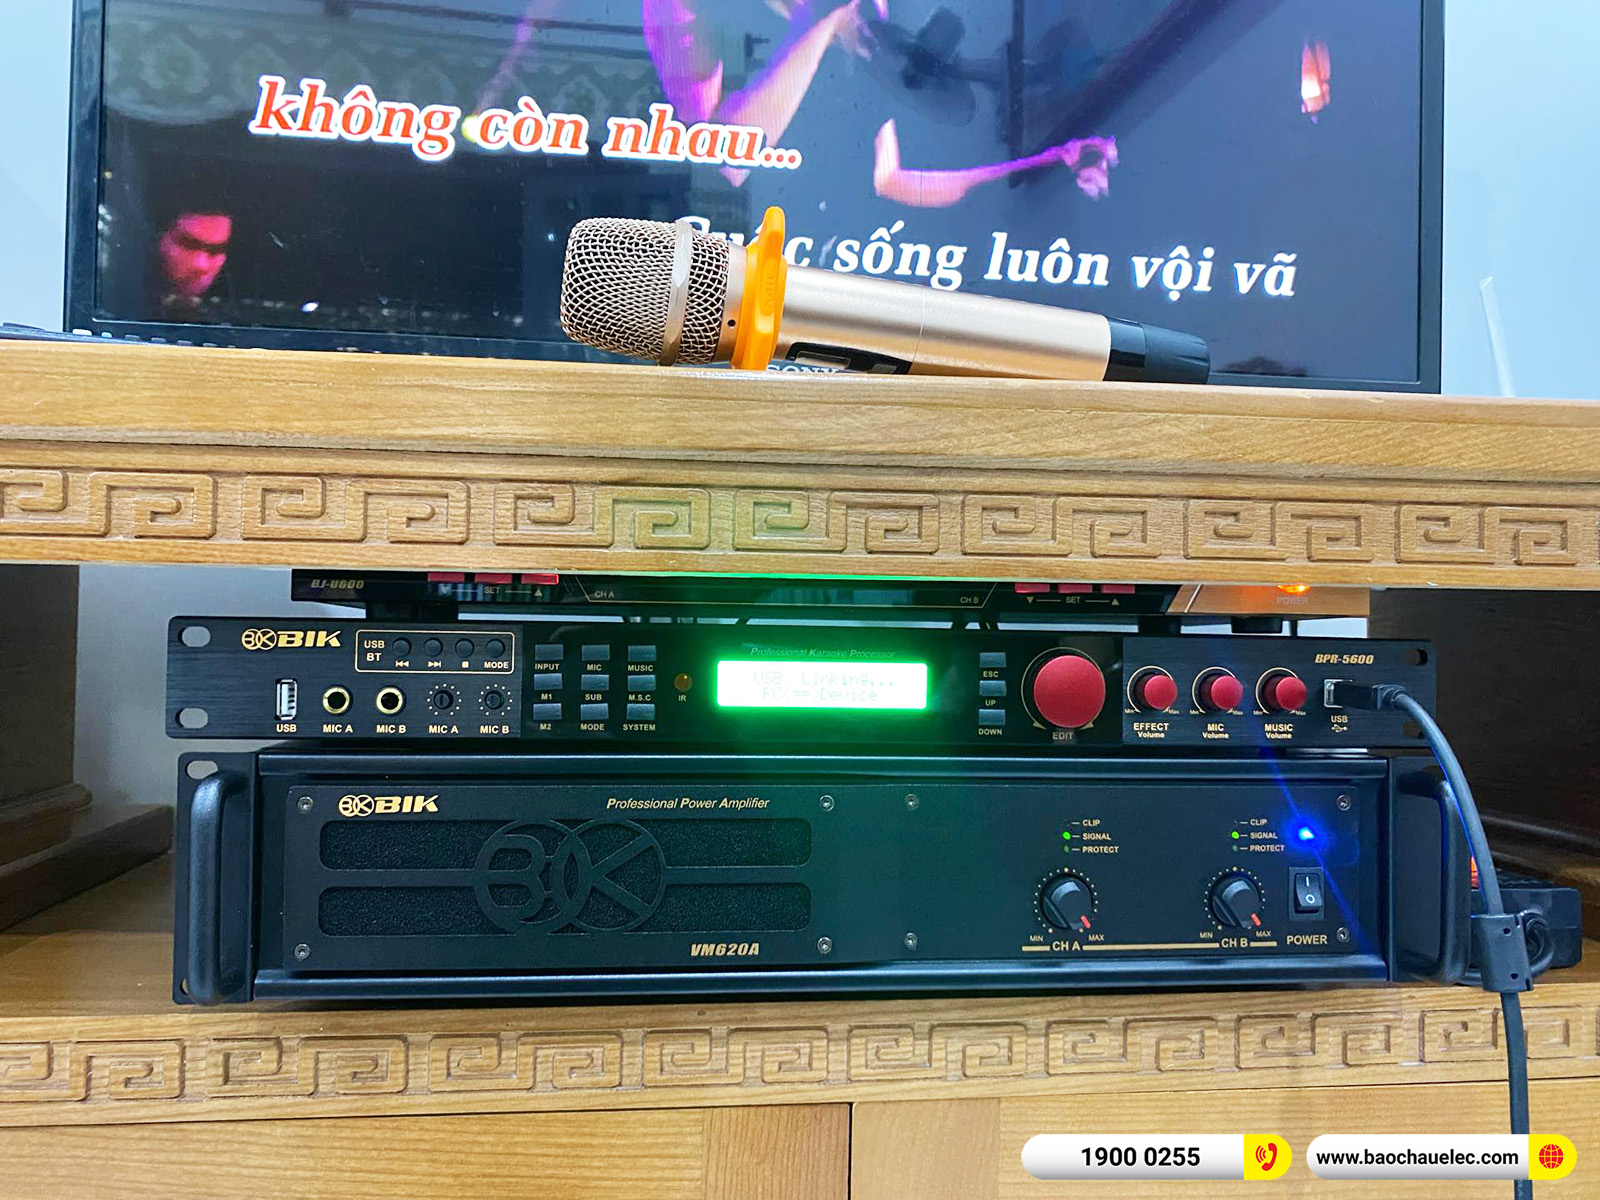 Lắp đặt dàn karaoke BIK gần 39tr cho chị Huyền tại Đồng Nai 